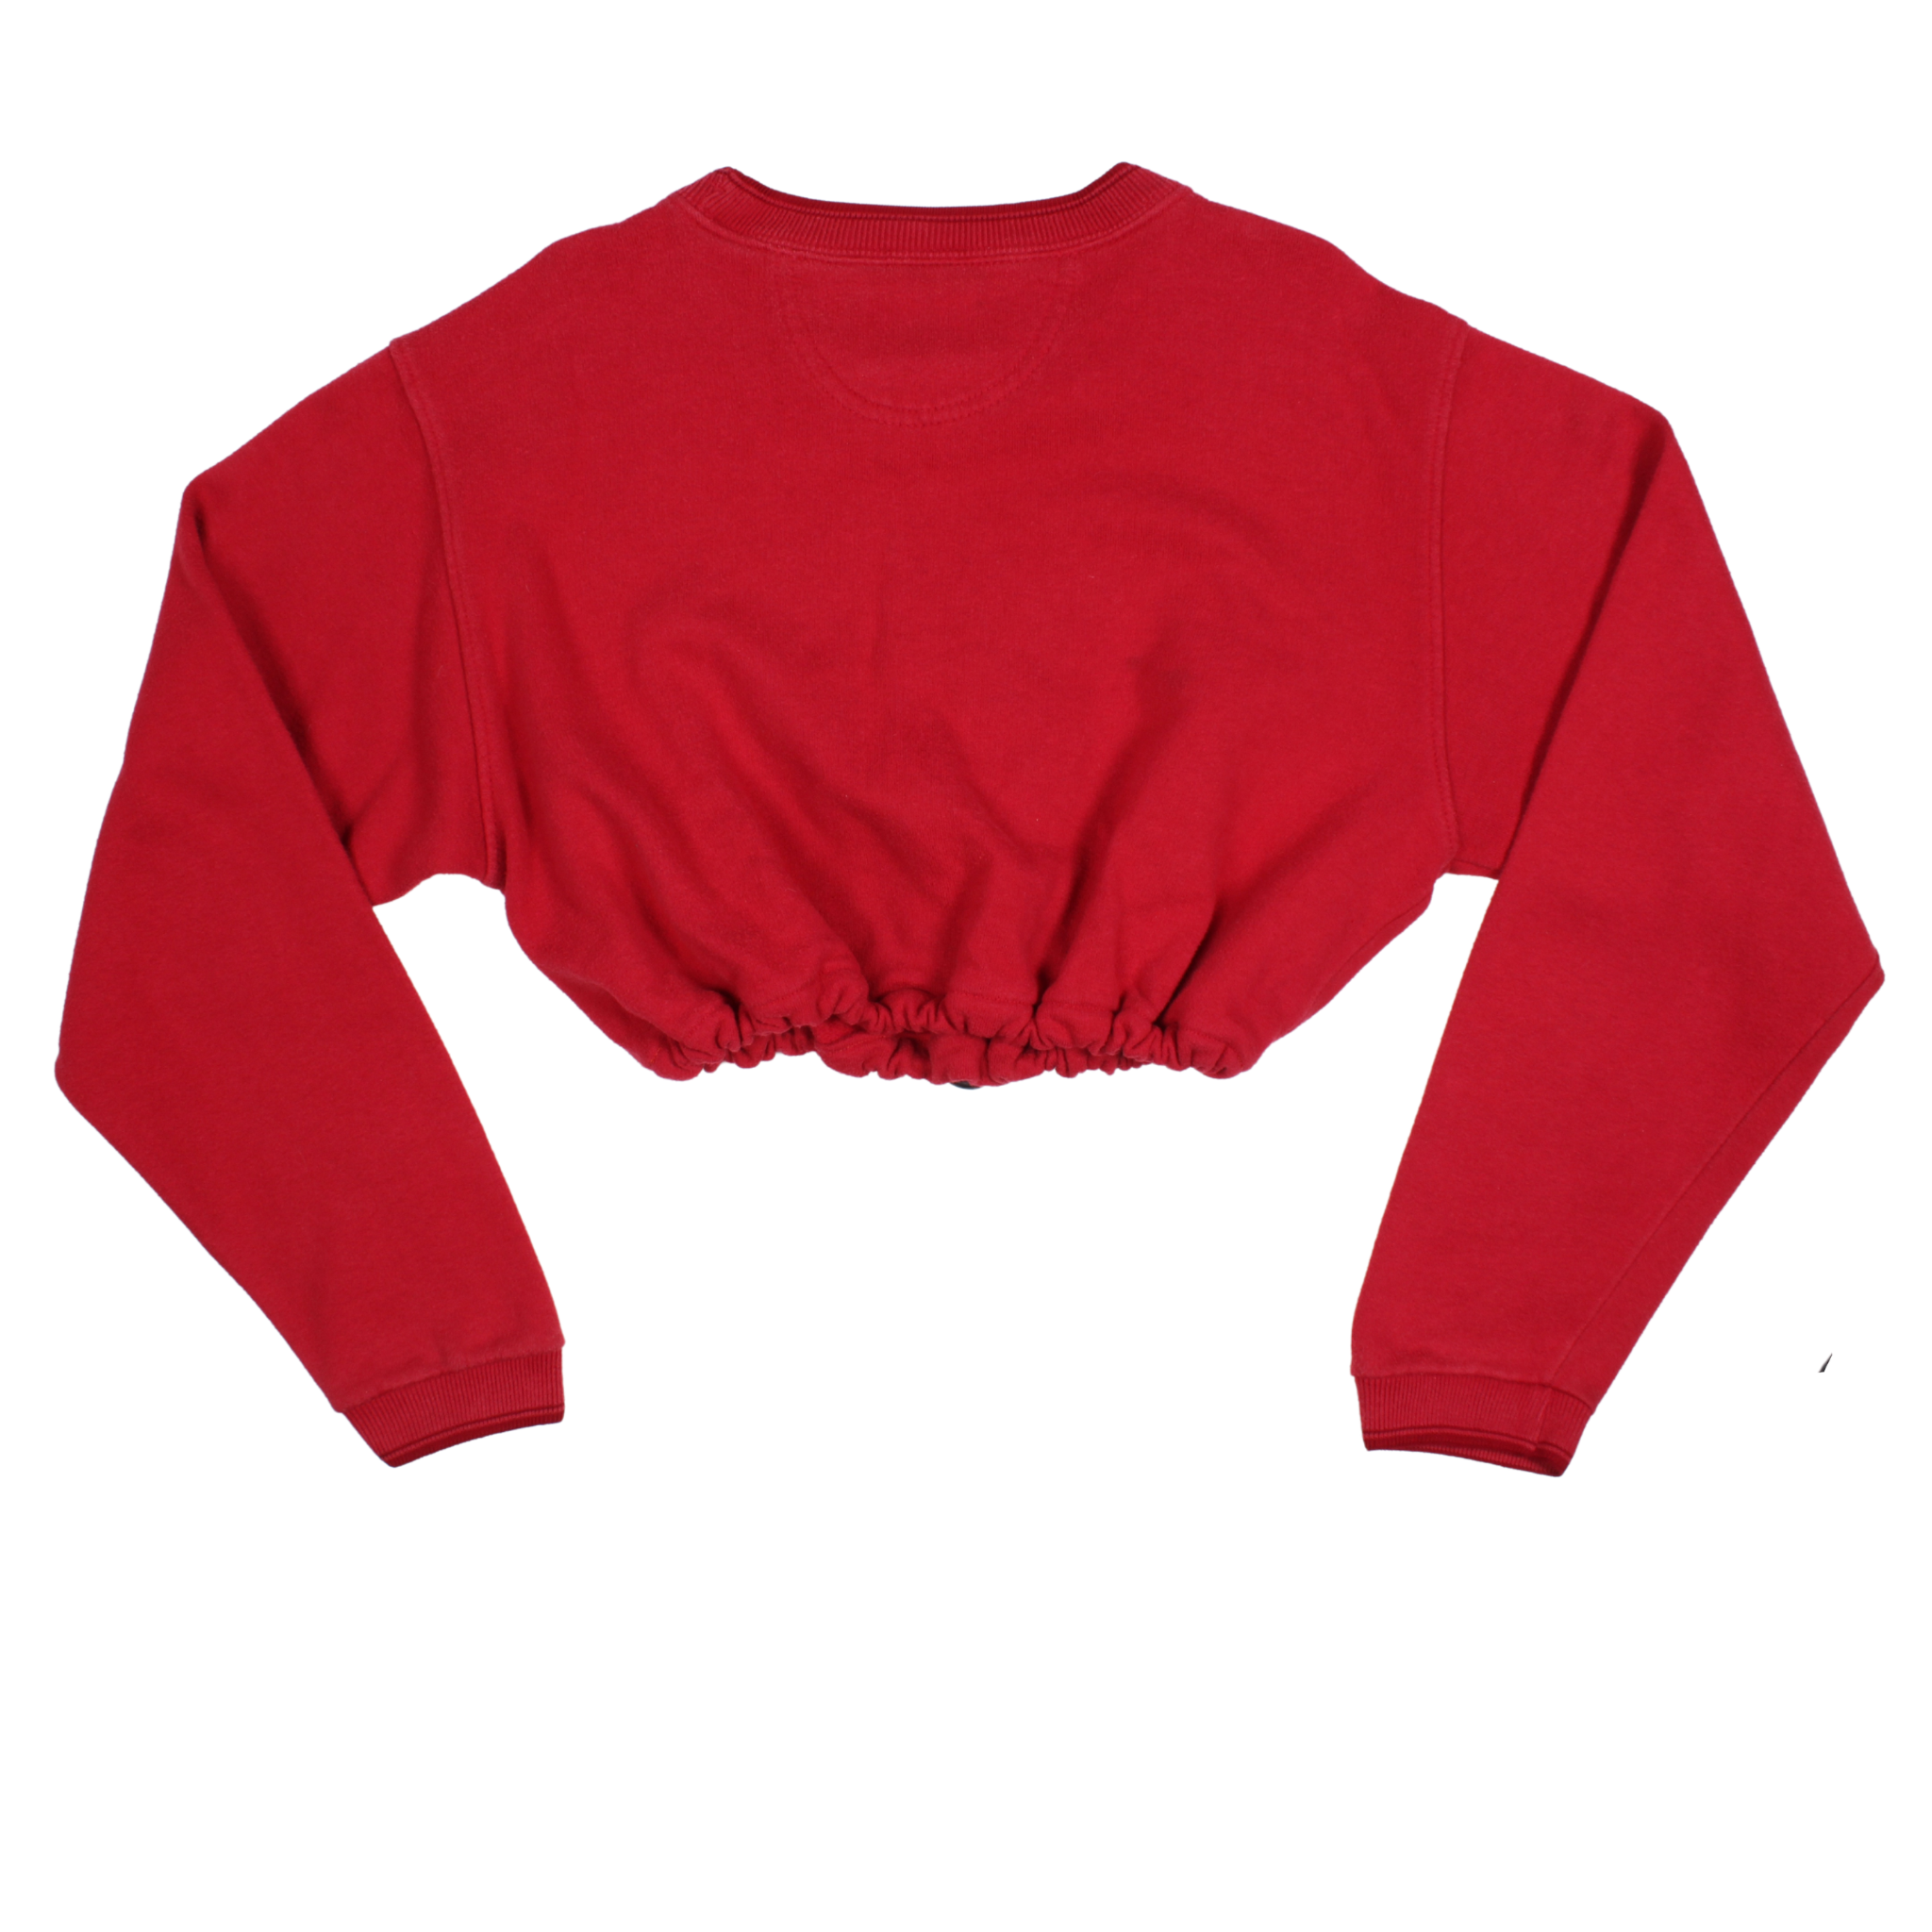 Vintage Champion Reworked Sweatshirt (M)